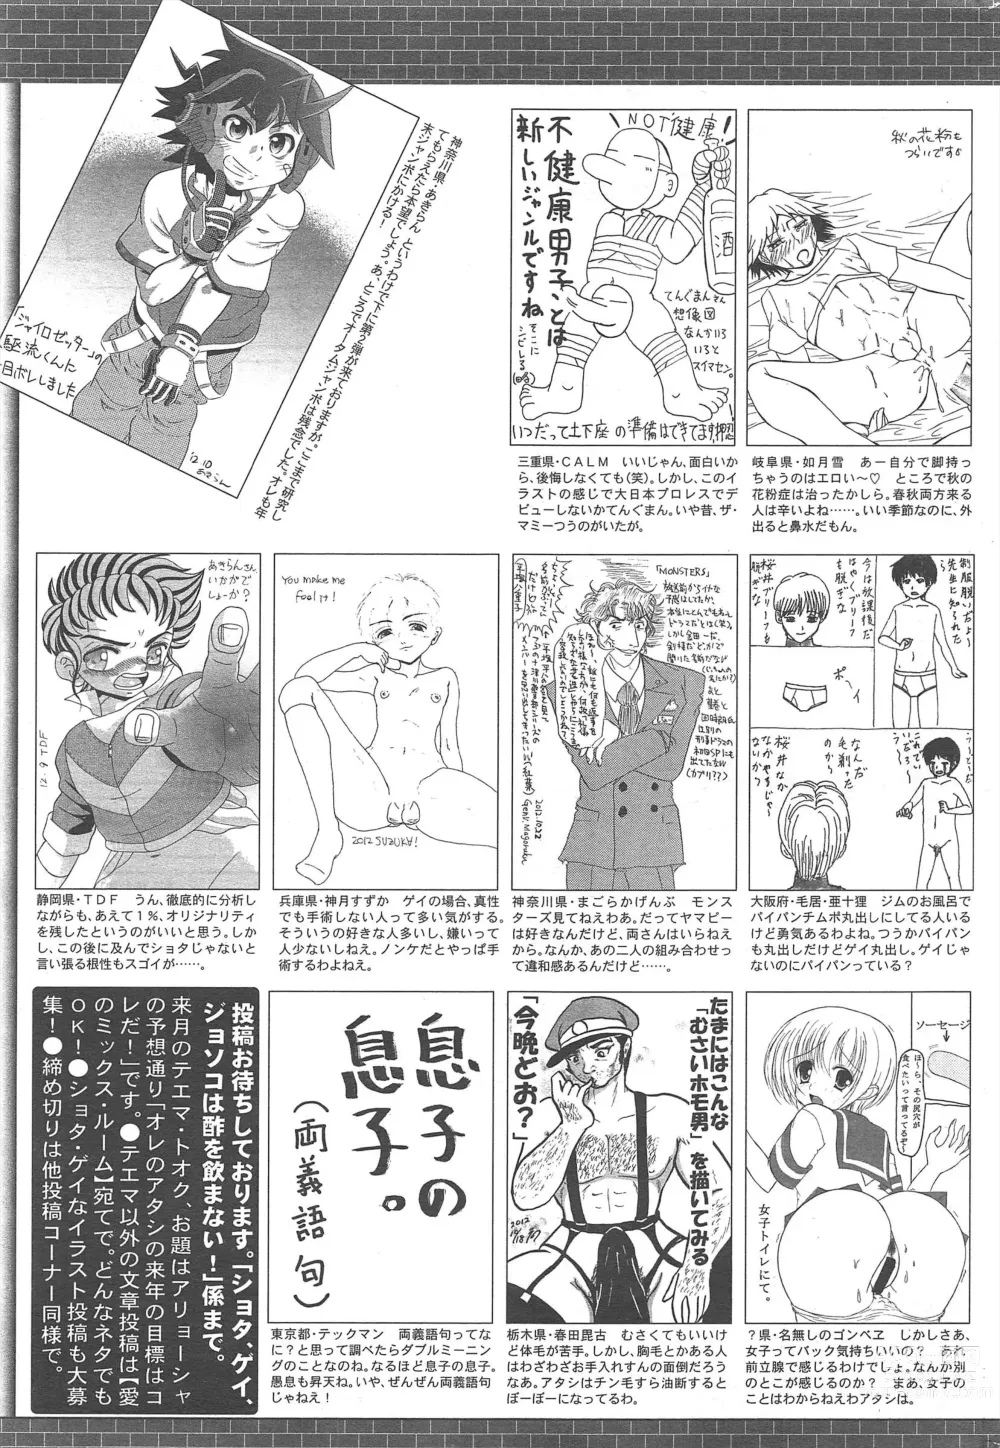 Page 325 of manga Manga Bangaichi 2013-01